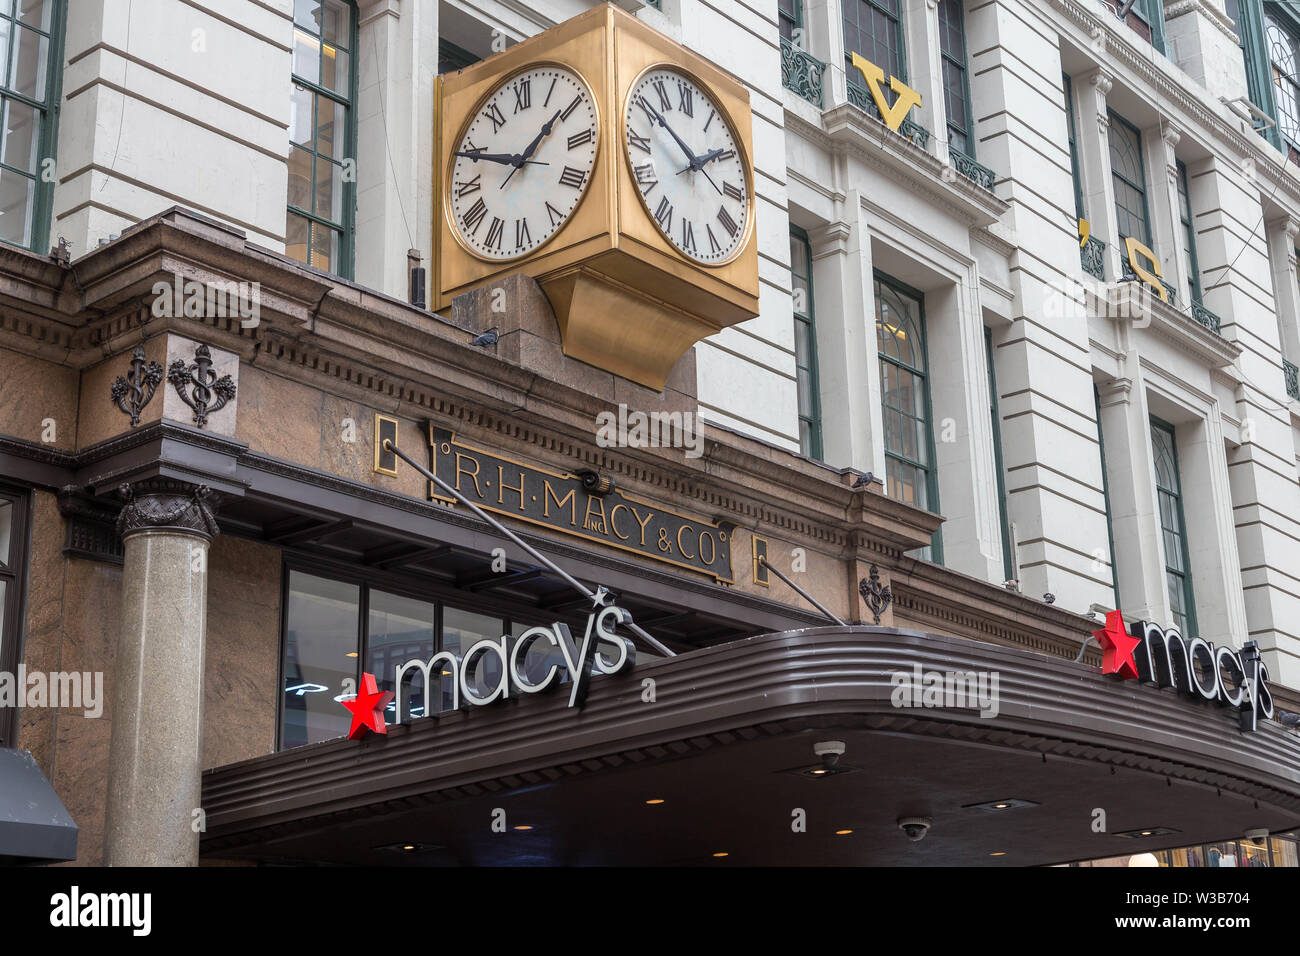 New York City, NY, USA - Oktober 16, 2013: Das traditionelle Geschäft gegenüber von Macy's in Manhattan, New York City Stockfoto